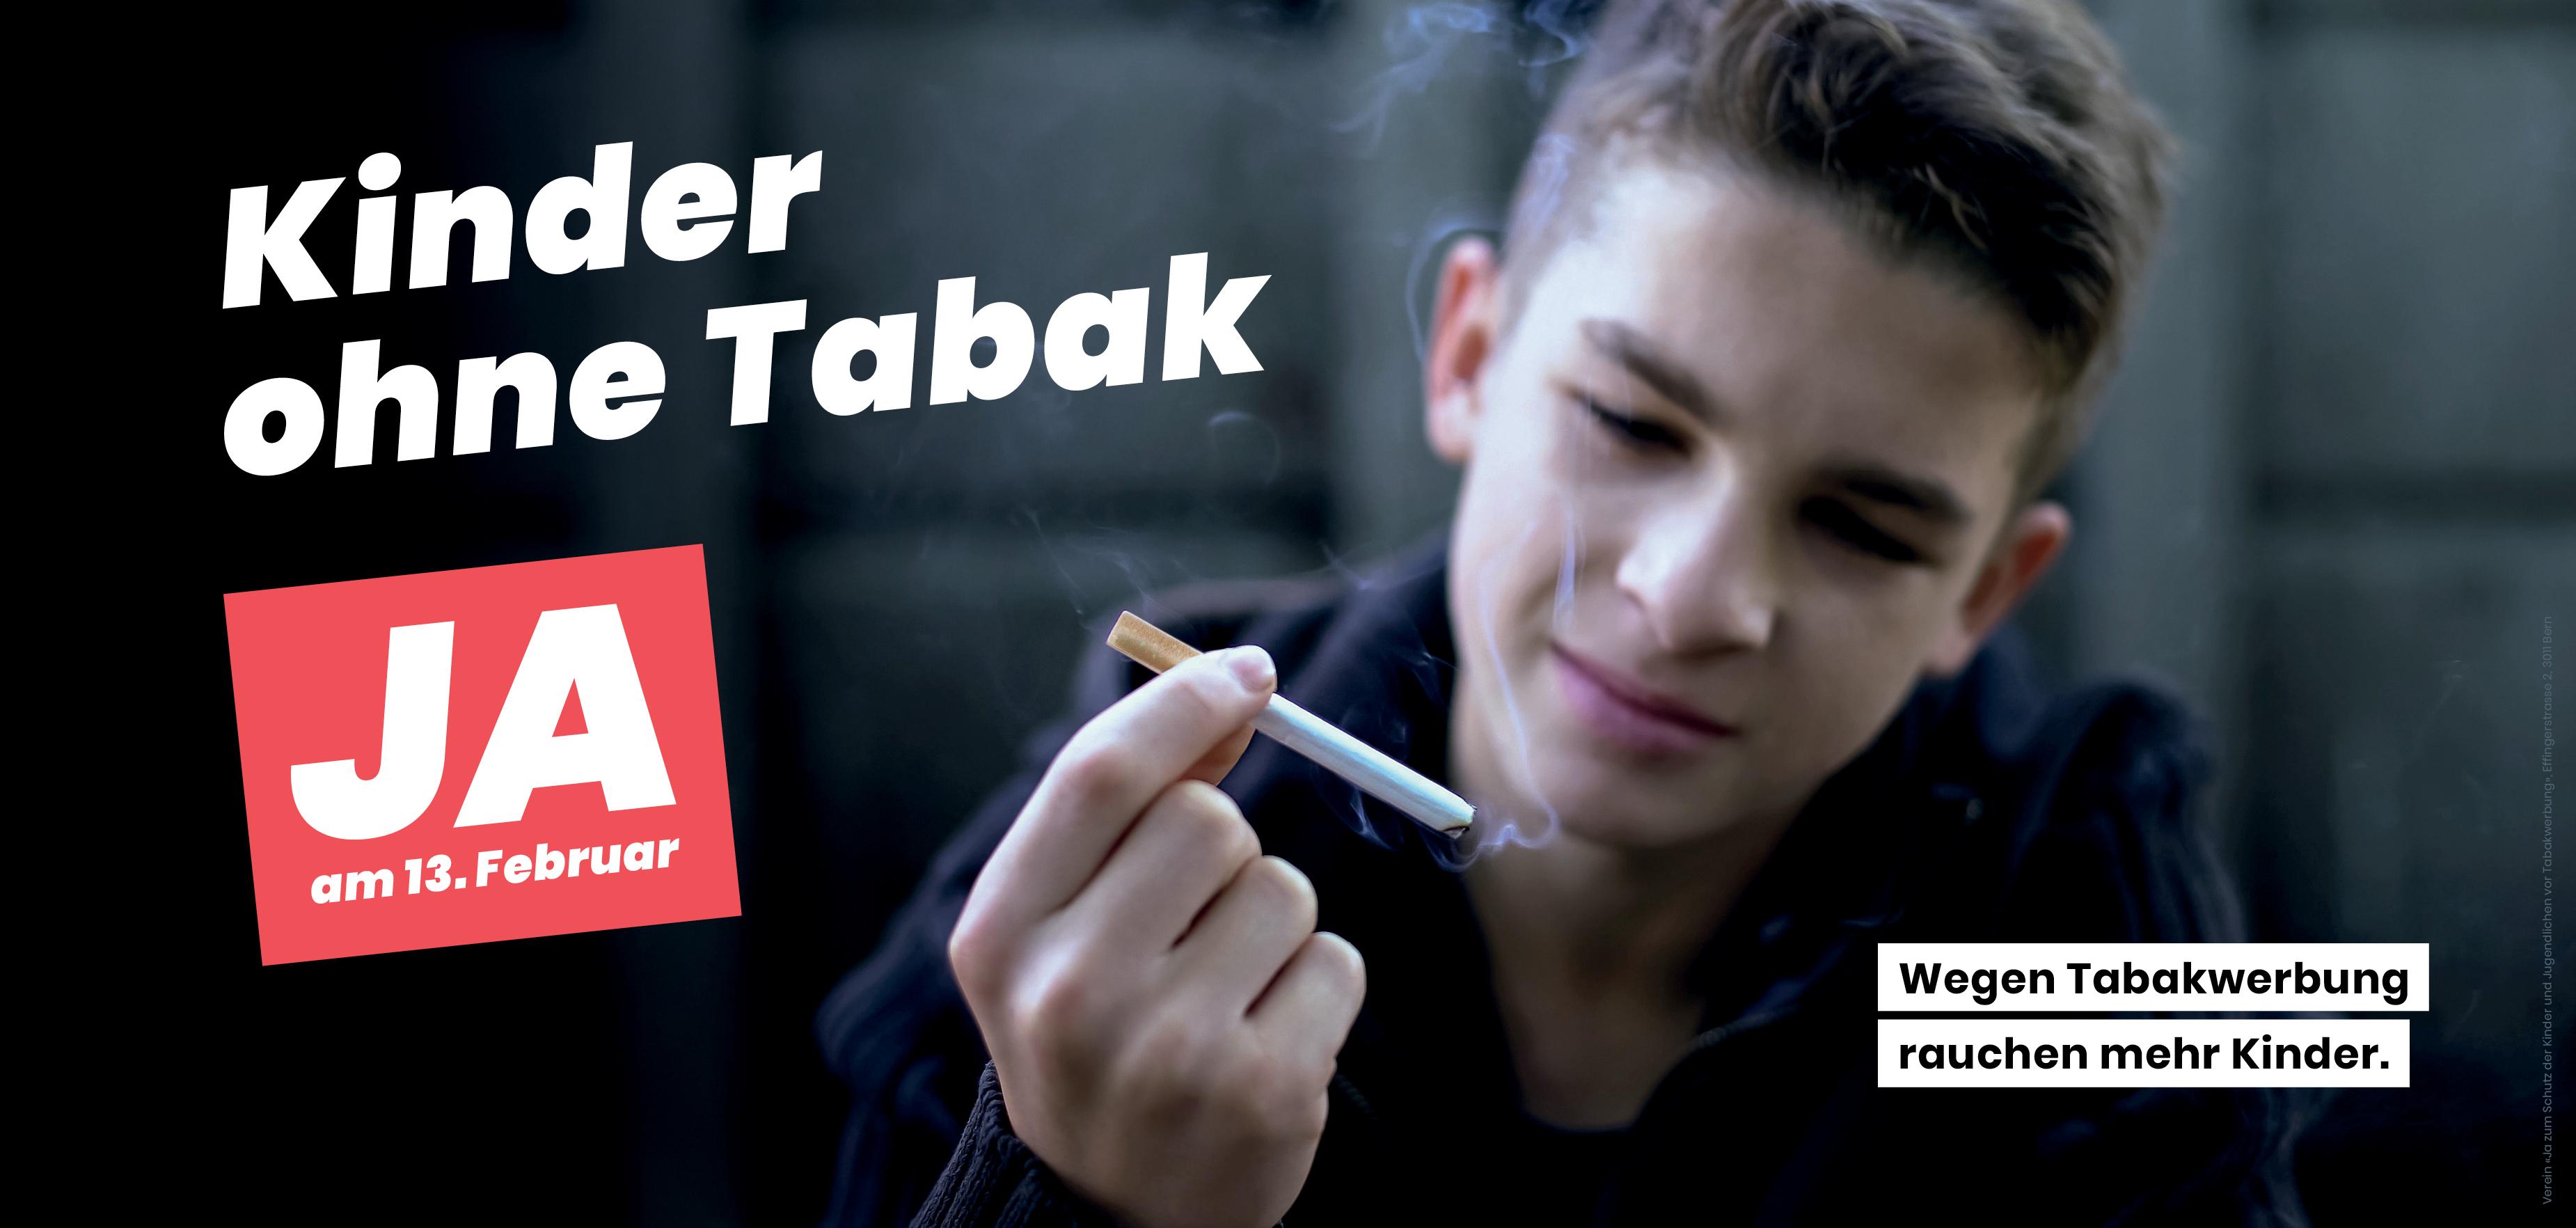 Kinder ohne Tabak – what else?